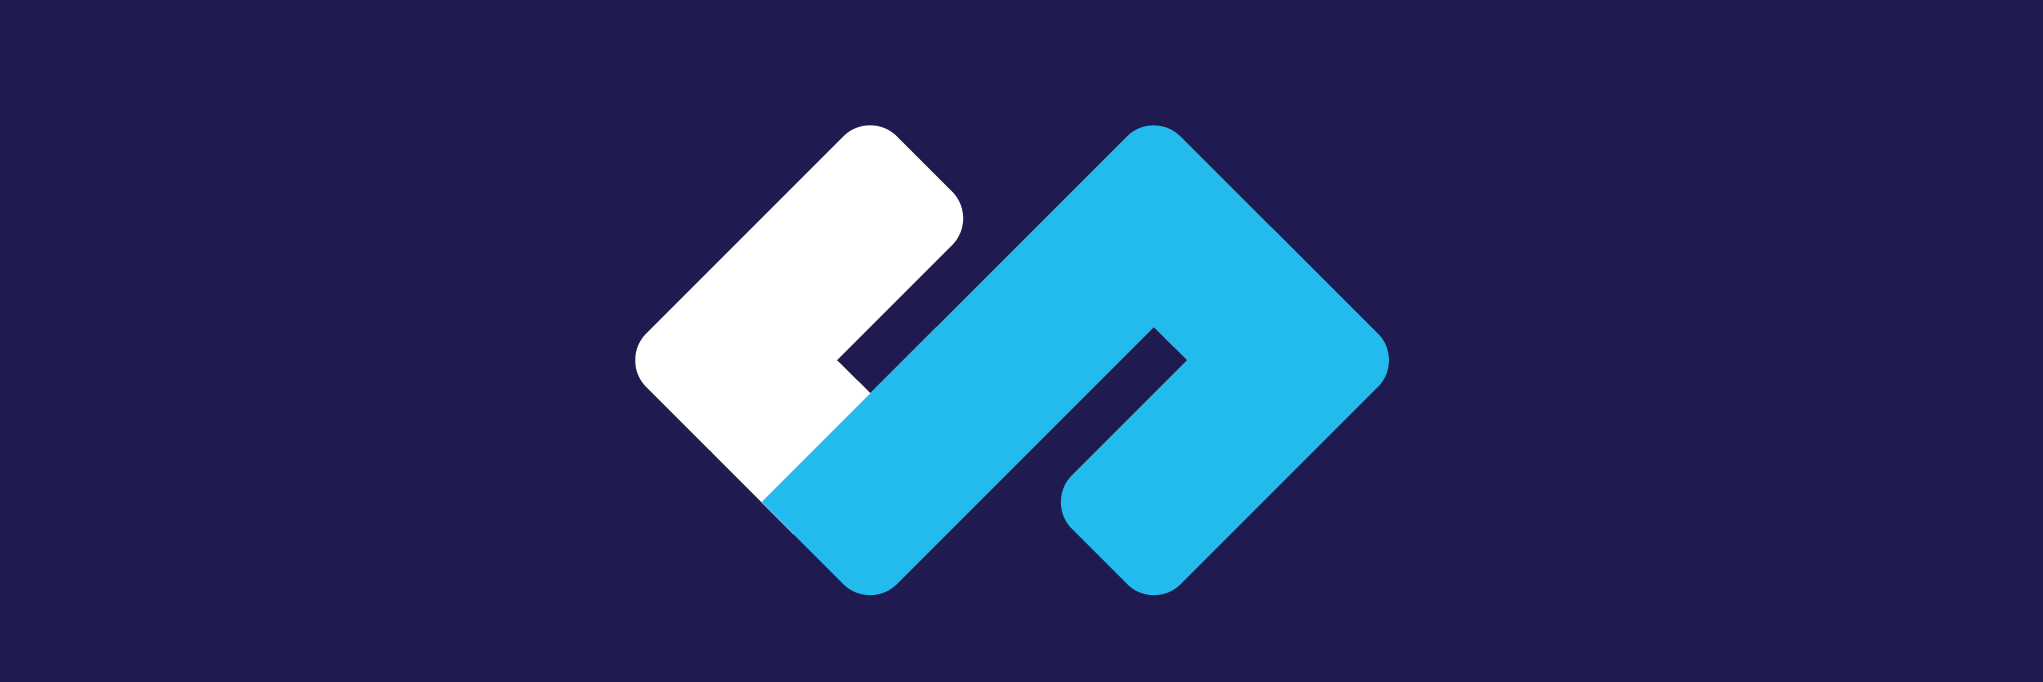 dominicode logo